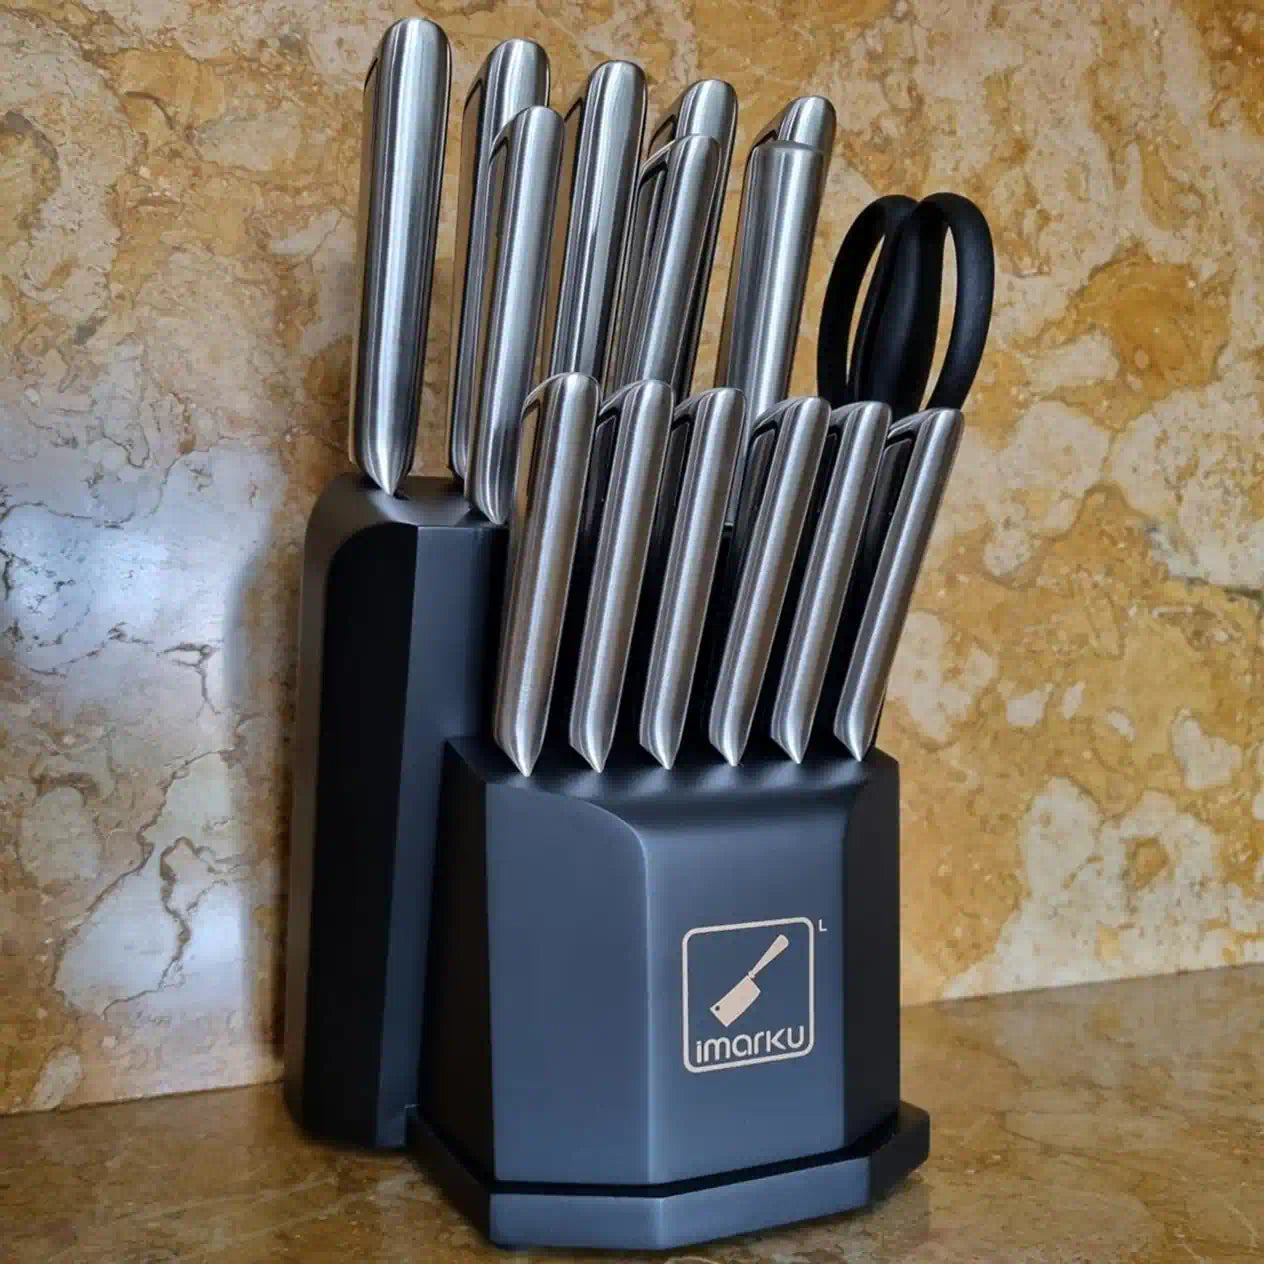  imarku Non Stick Frying Pans Set 16 Pcs Kitchen Knife Set,  Dishwasher Safe Nonstick Frying Pan Set, Pot set with Detachable Handle:  Home & Kitchen